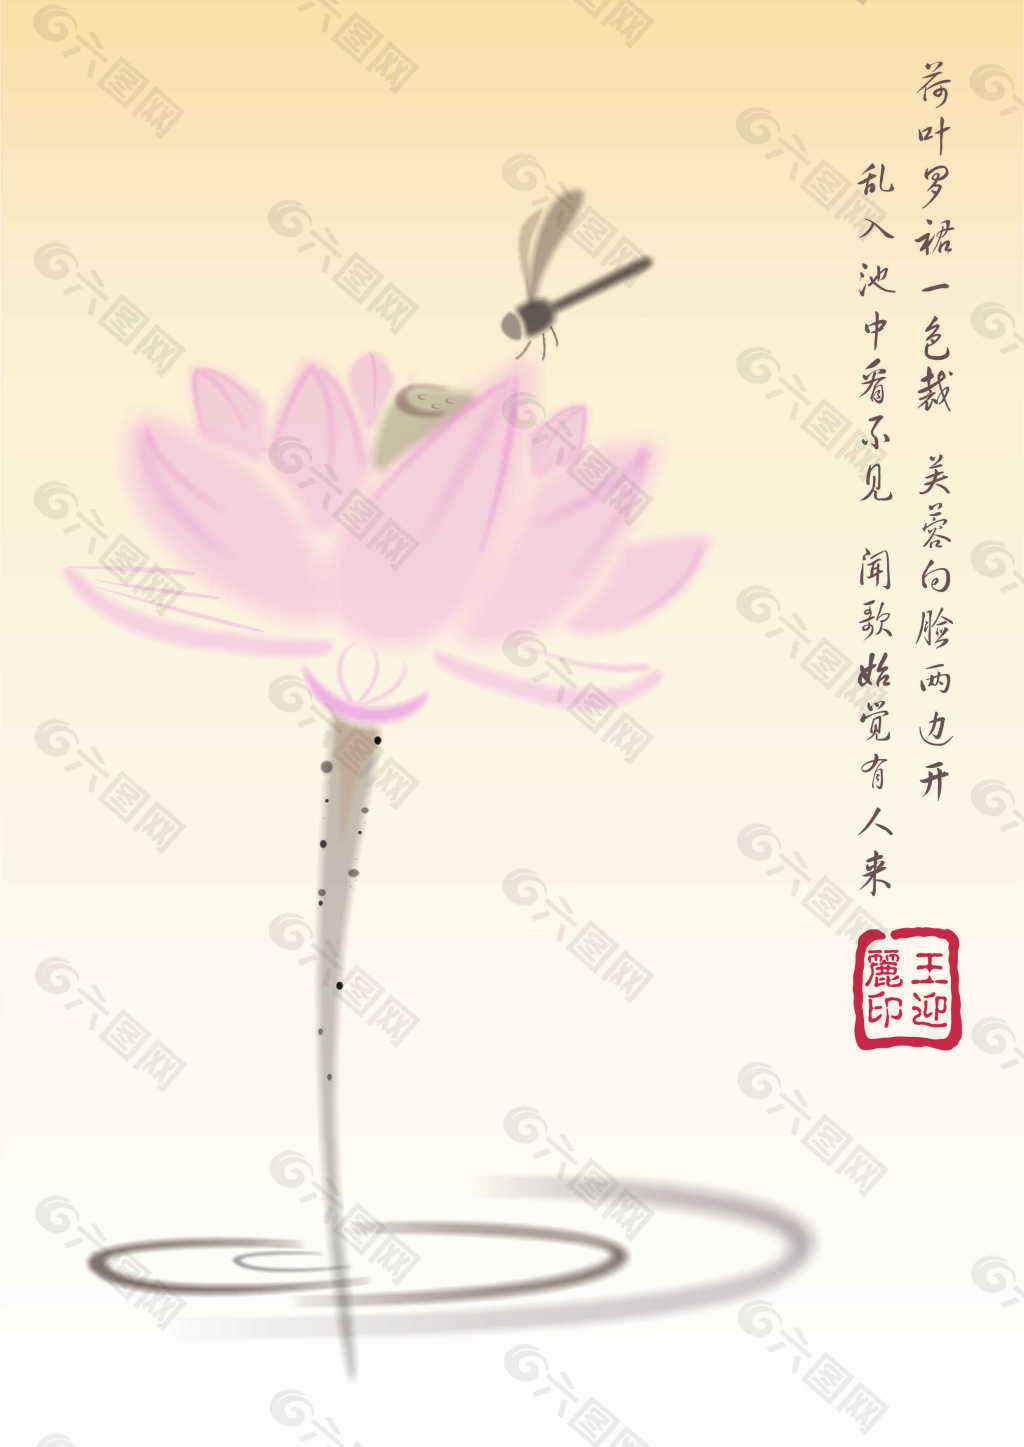 中国风荷花蜻蜓素材出水芙蓉